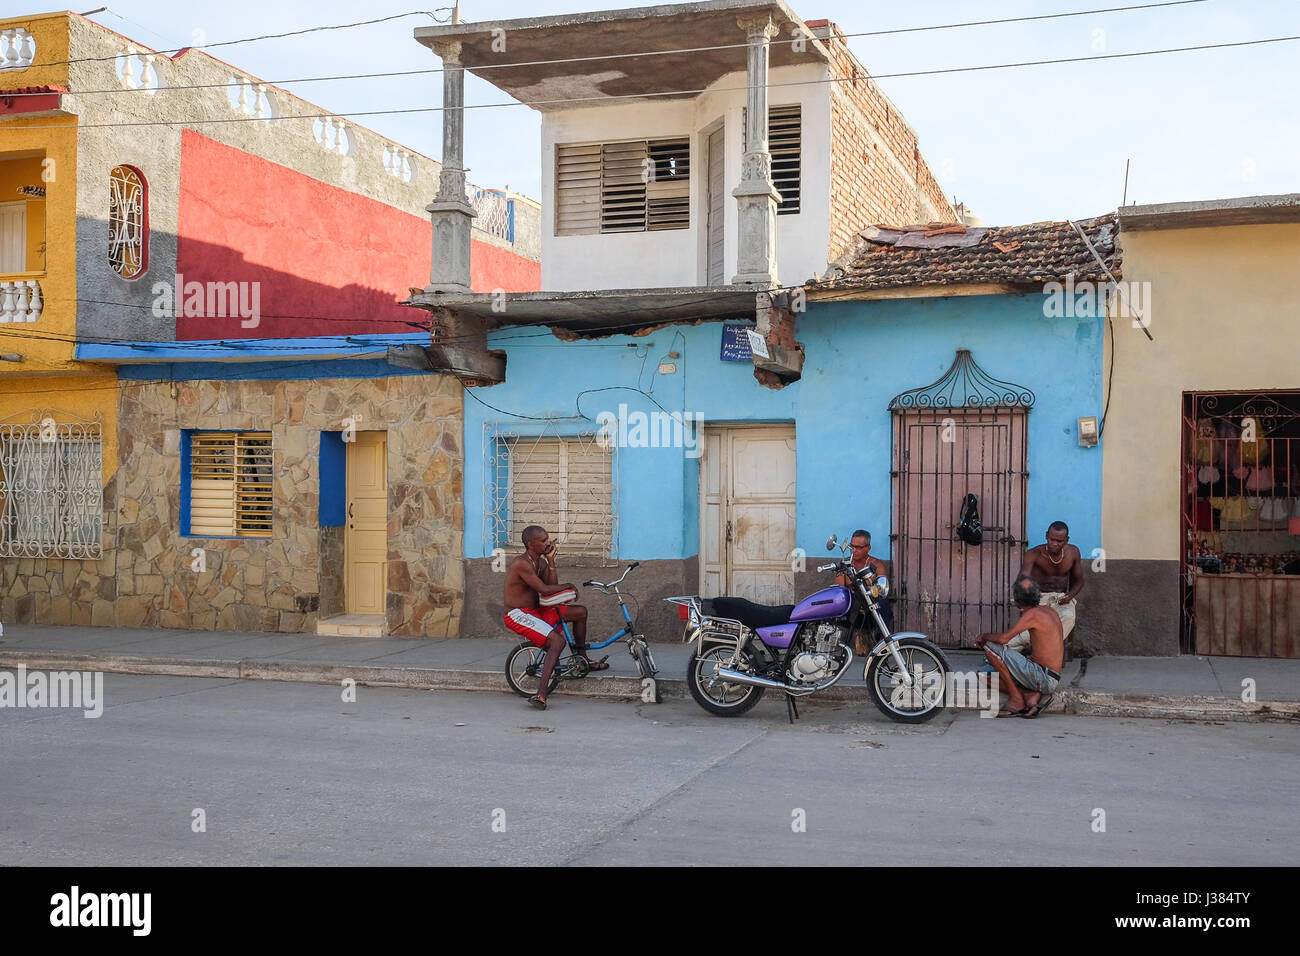 La vida de la calle local en Trinidad, Sancti Spíritus, Cuba. Los cubanos local reunir después del trabajo. Foto de stock